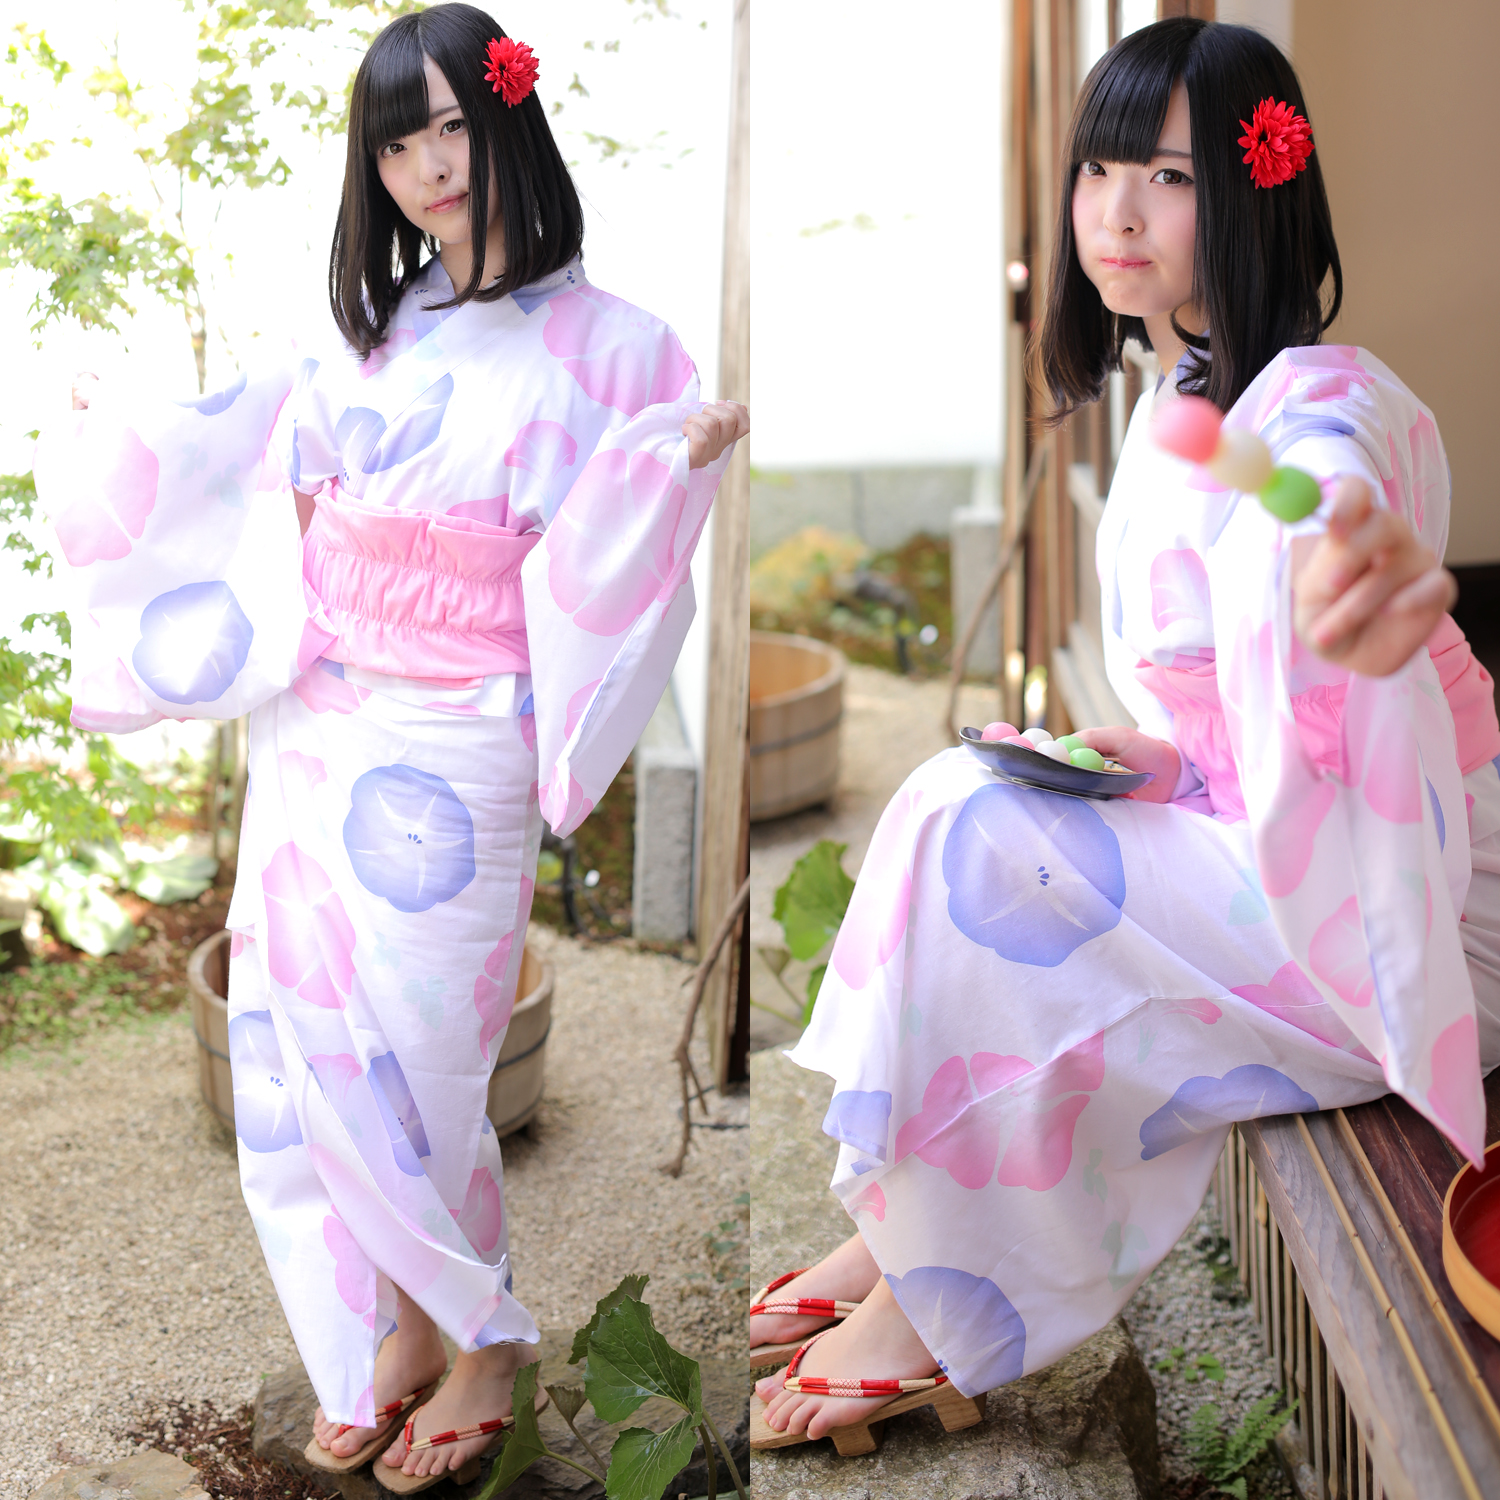 月影: 2014京都之夏．浴衣的浪漫